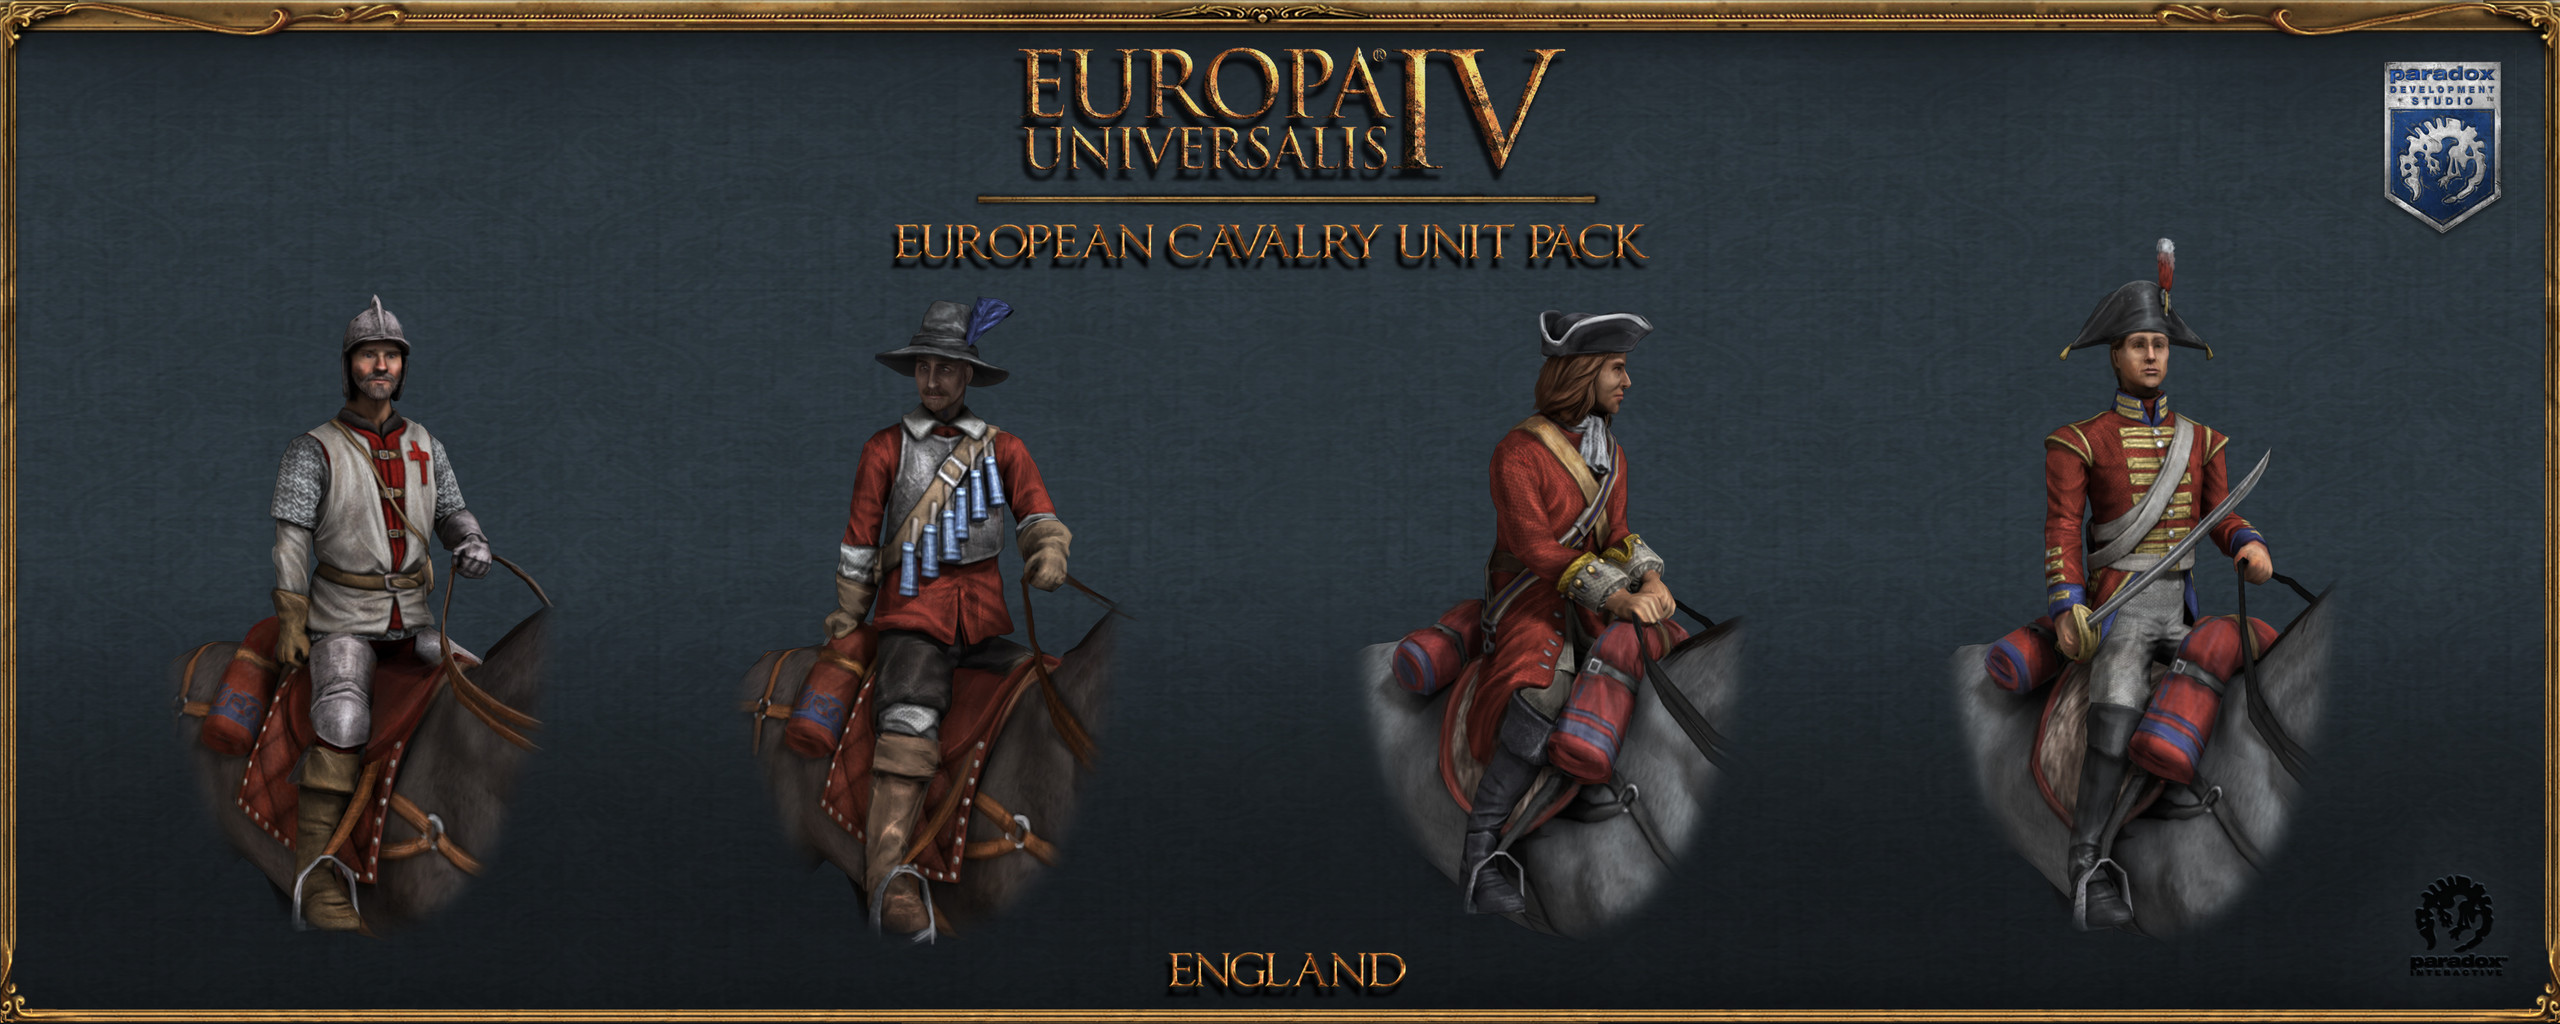 Avrupa Atlıları Birim Paketi (European Cavalry Unit Pack). 